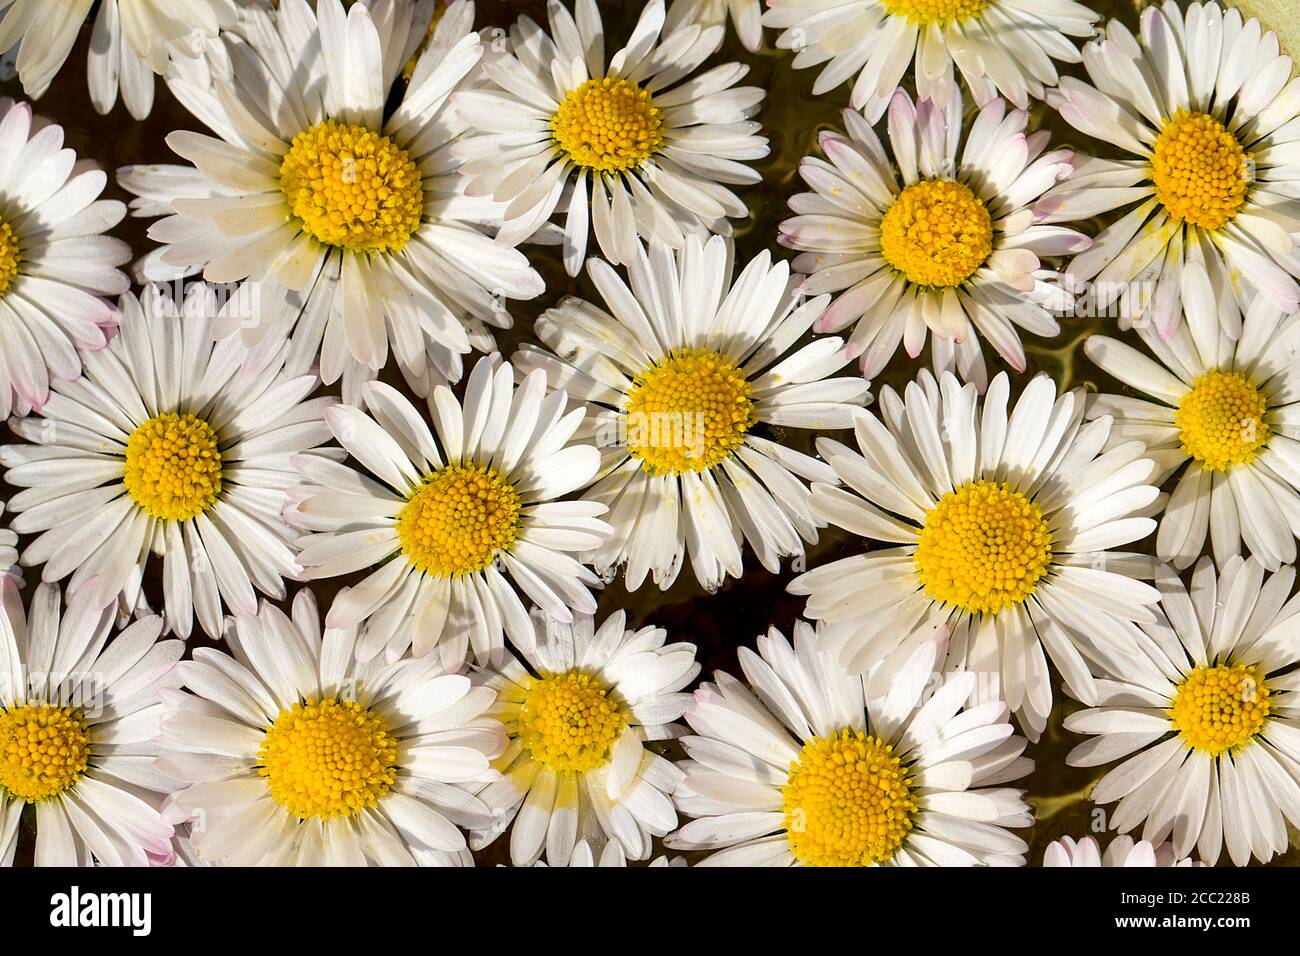 Germany, Bavaria, Daisy flowers, close up Stock Photo